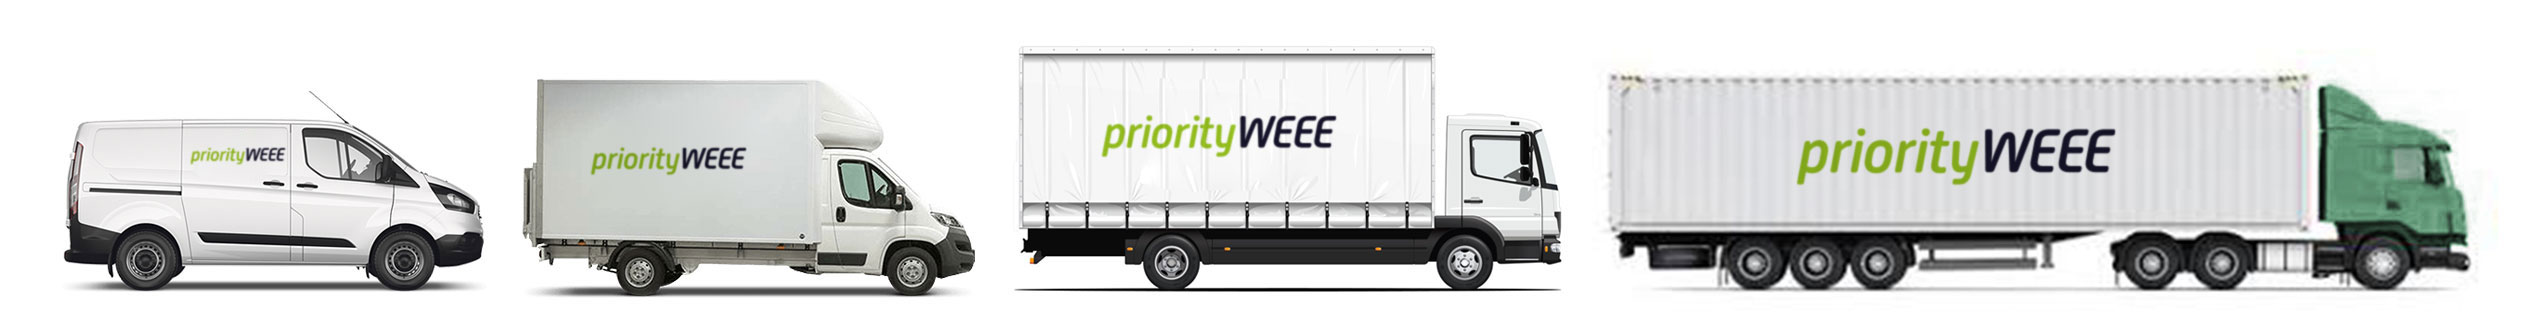 Priority WEEE Vans